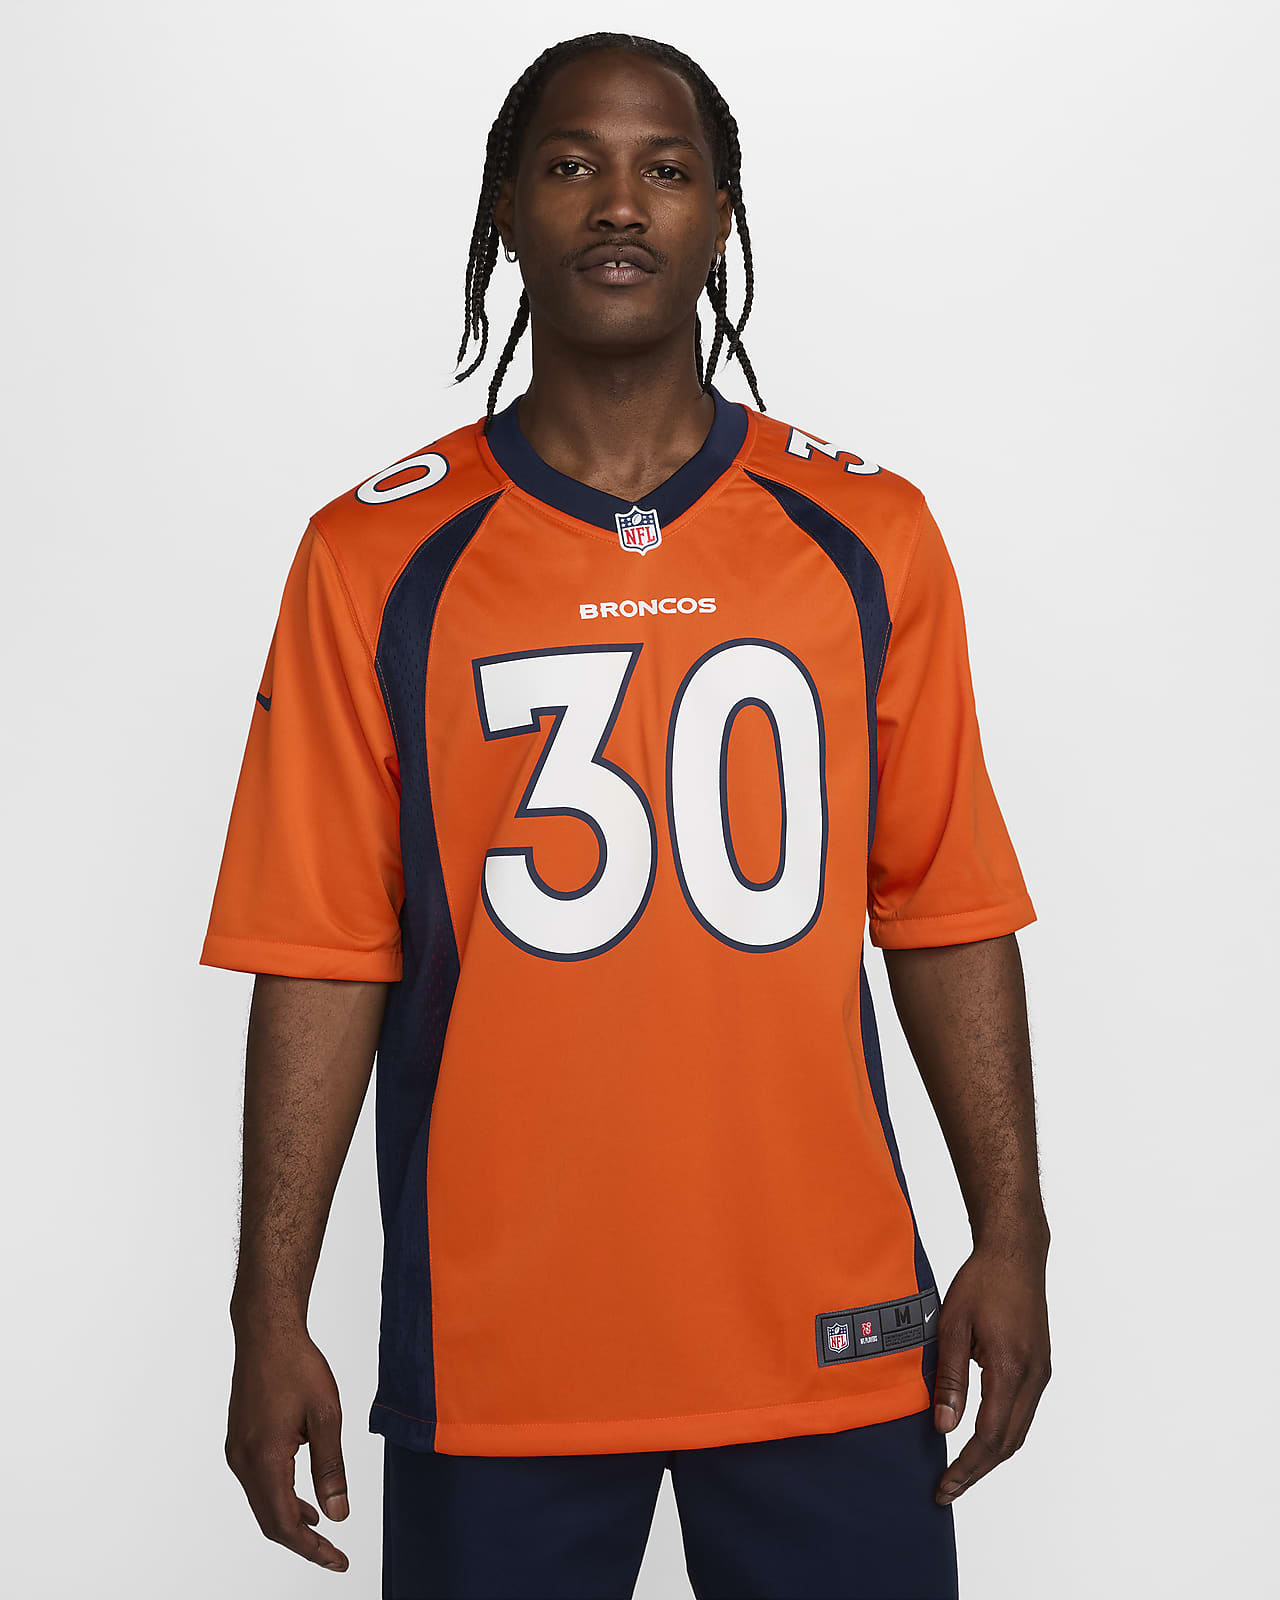 Męska koszulka meczowa do futbolu amerykańskiego NFL Denver Broncos (Phillip Lindsay)